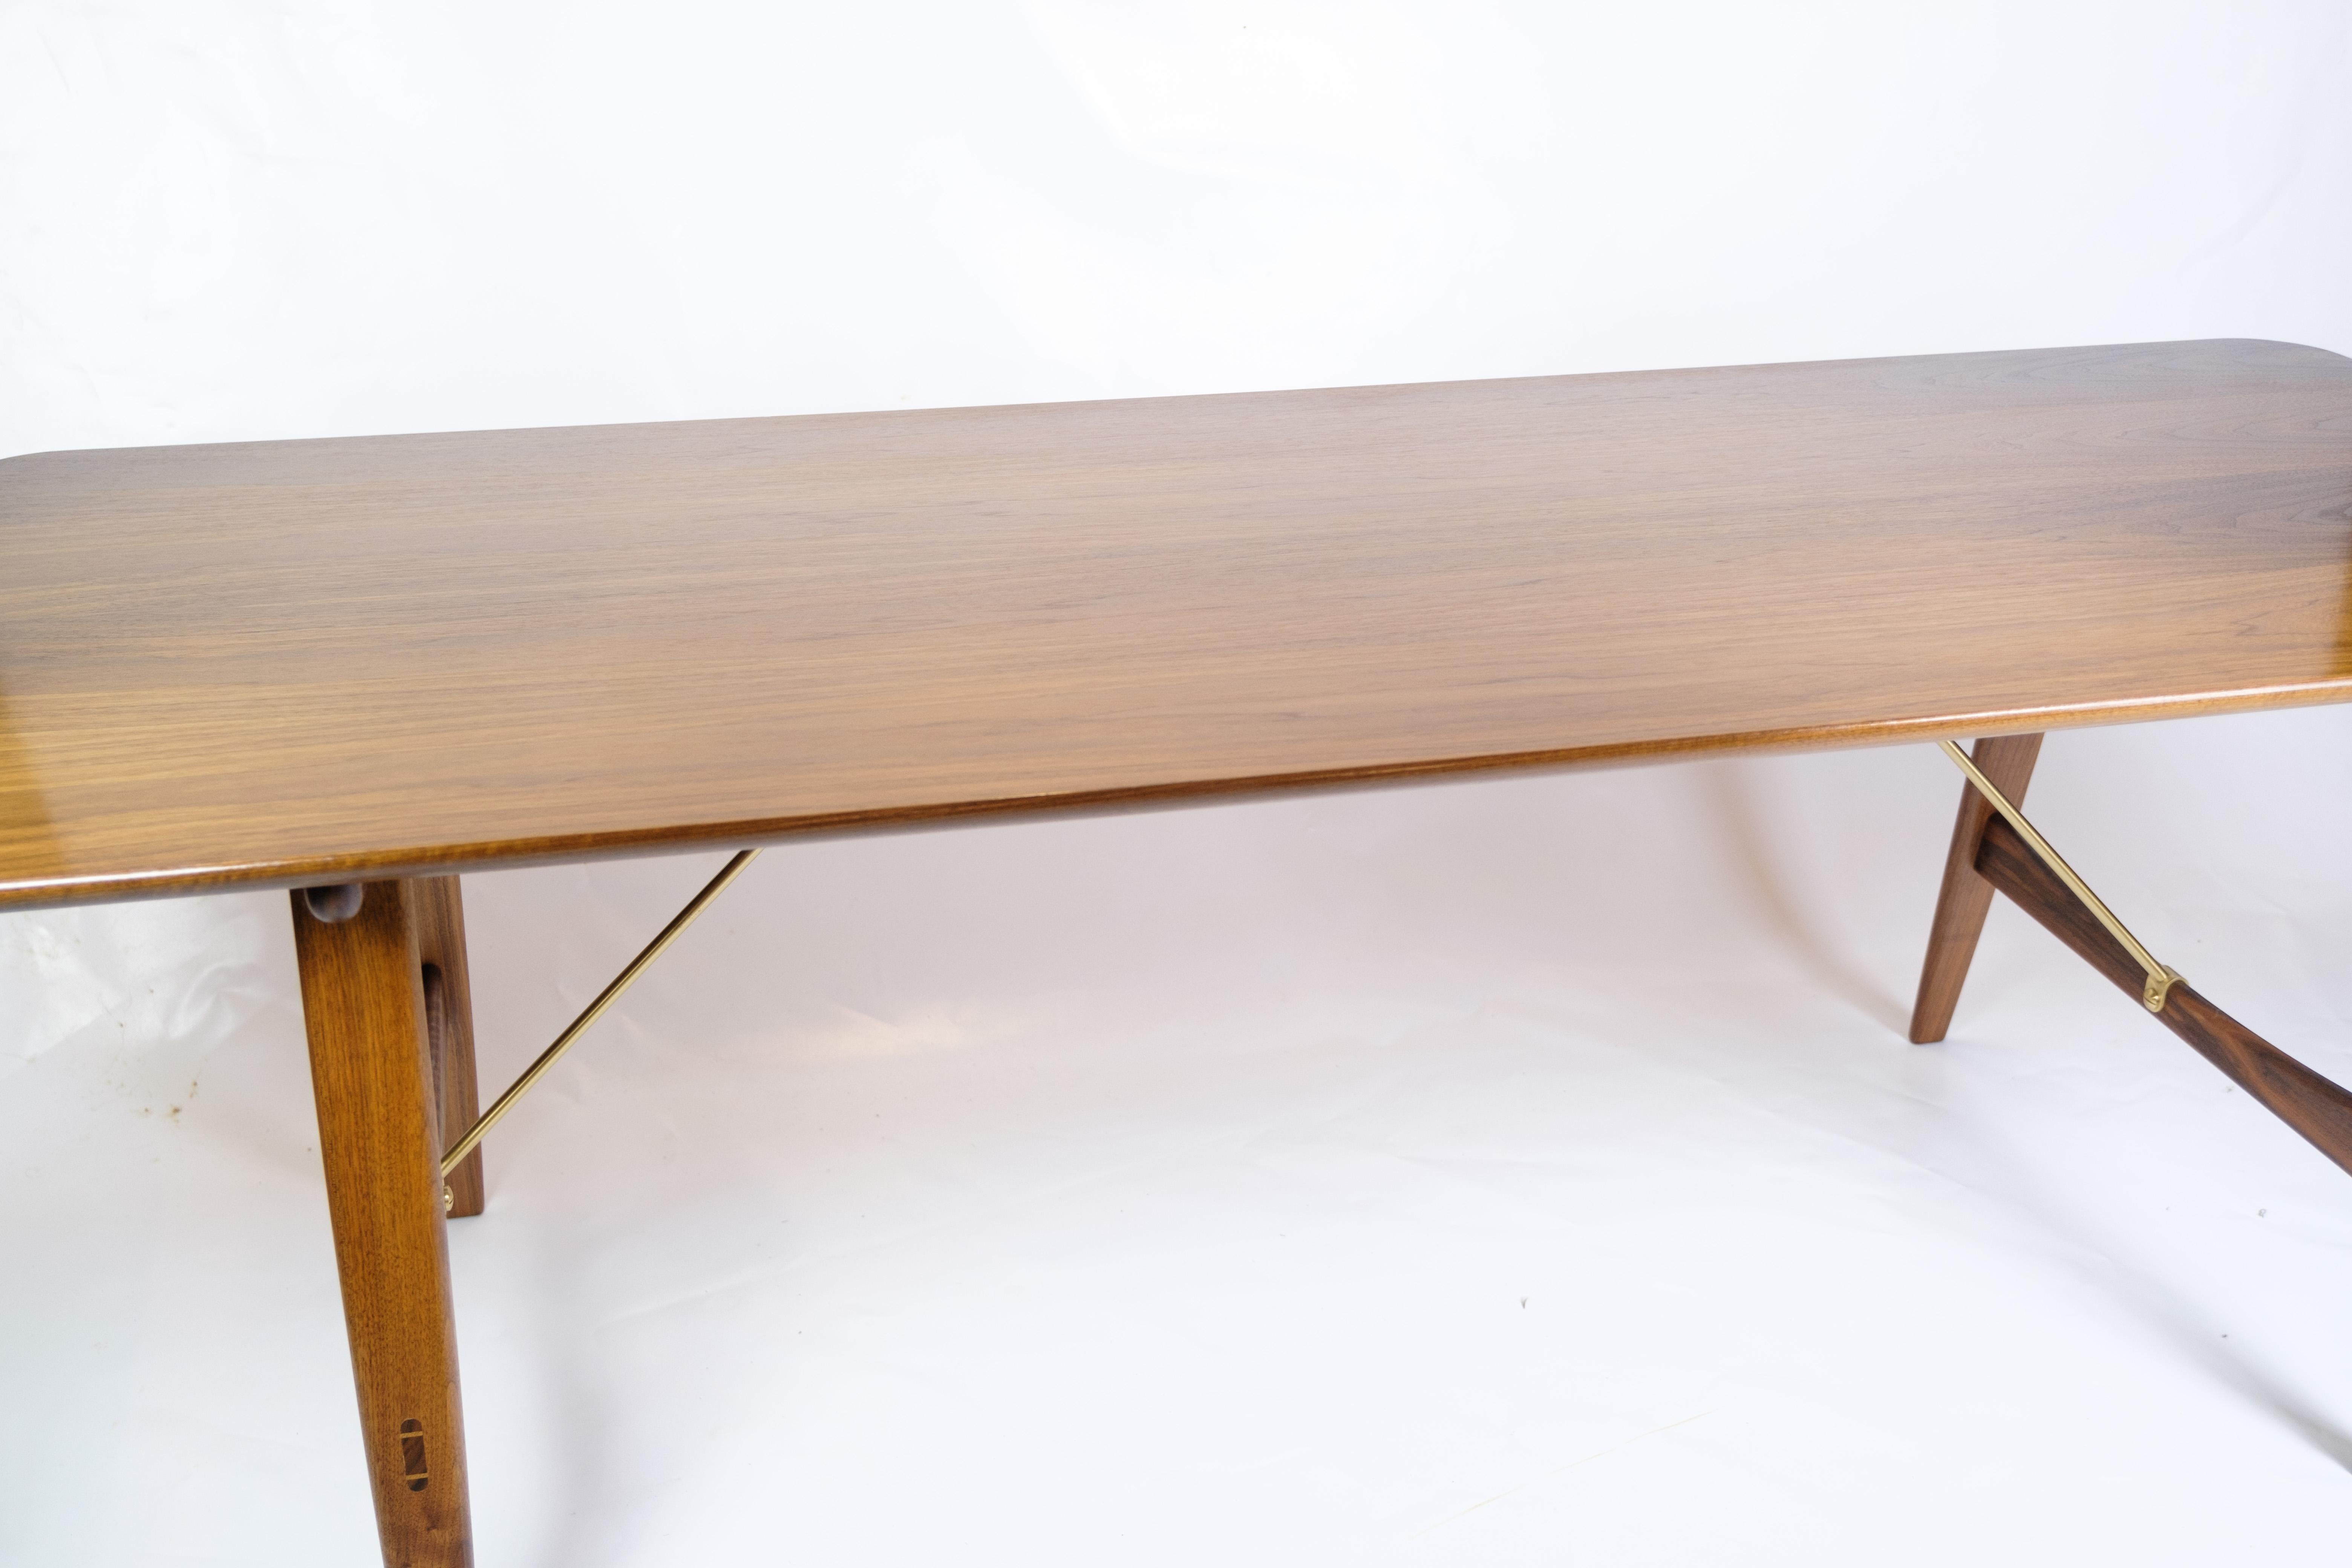 Der Jagdtisch, bekannt als Modell BM1160, ist ein großartiges Beispiel für Børge Mogensens einzigartige Designästhetik. Der aus Nussbaumholz gefertigte und von Messingstreben getragene Tisch strahlt Eleganz und Funktionalität aus.

Børge Mogensen,